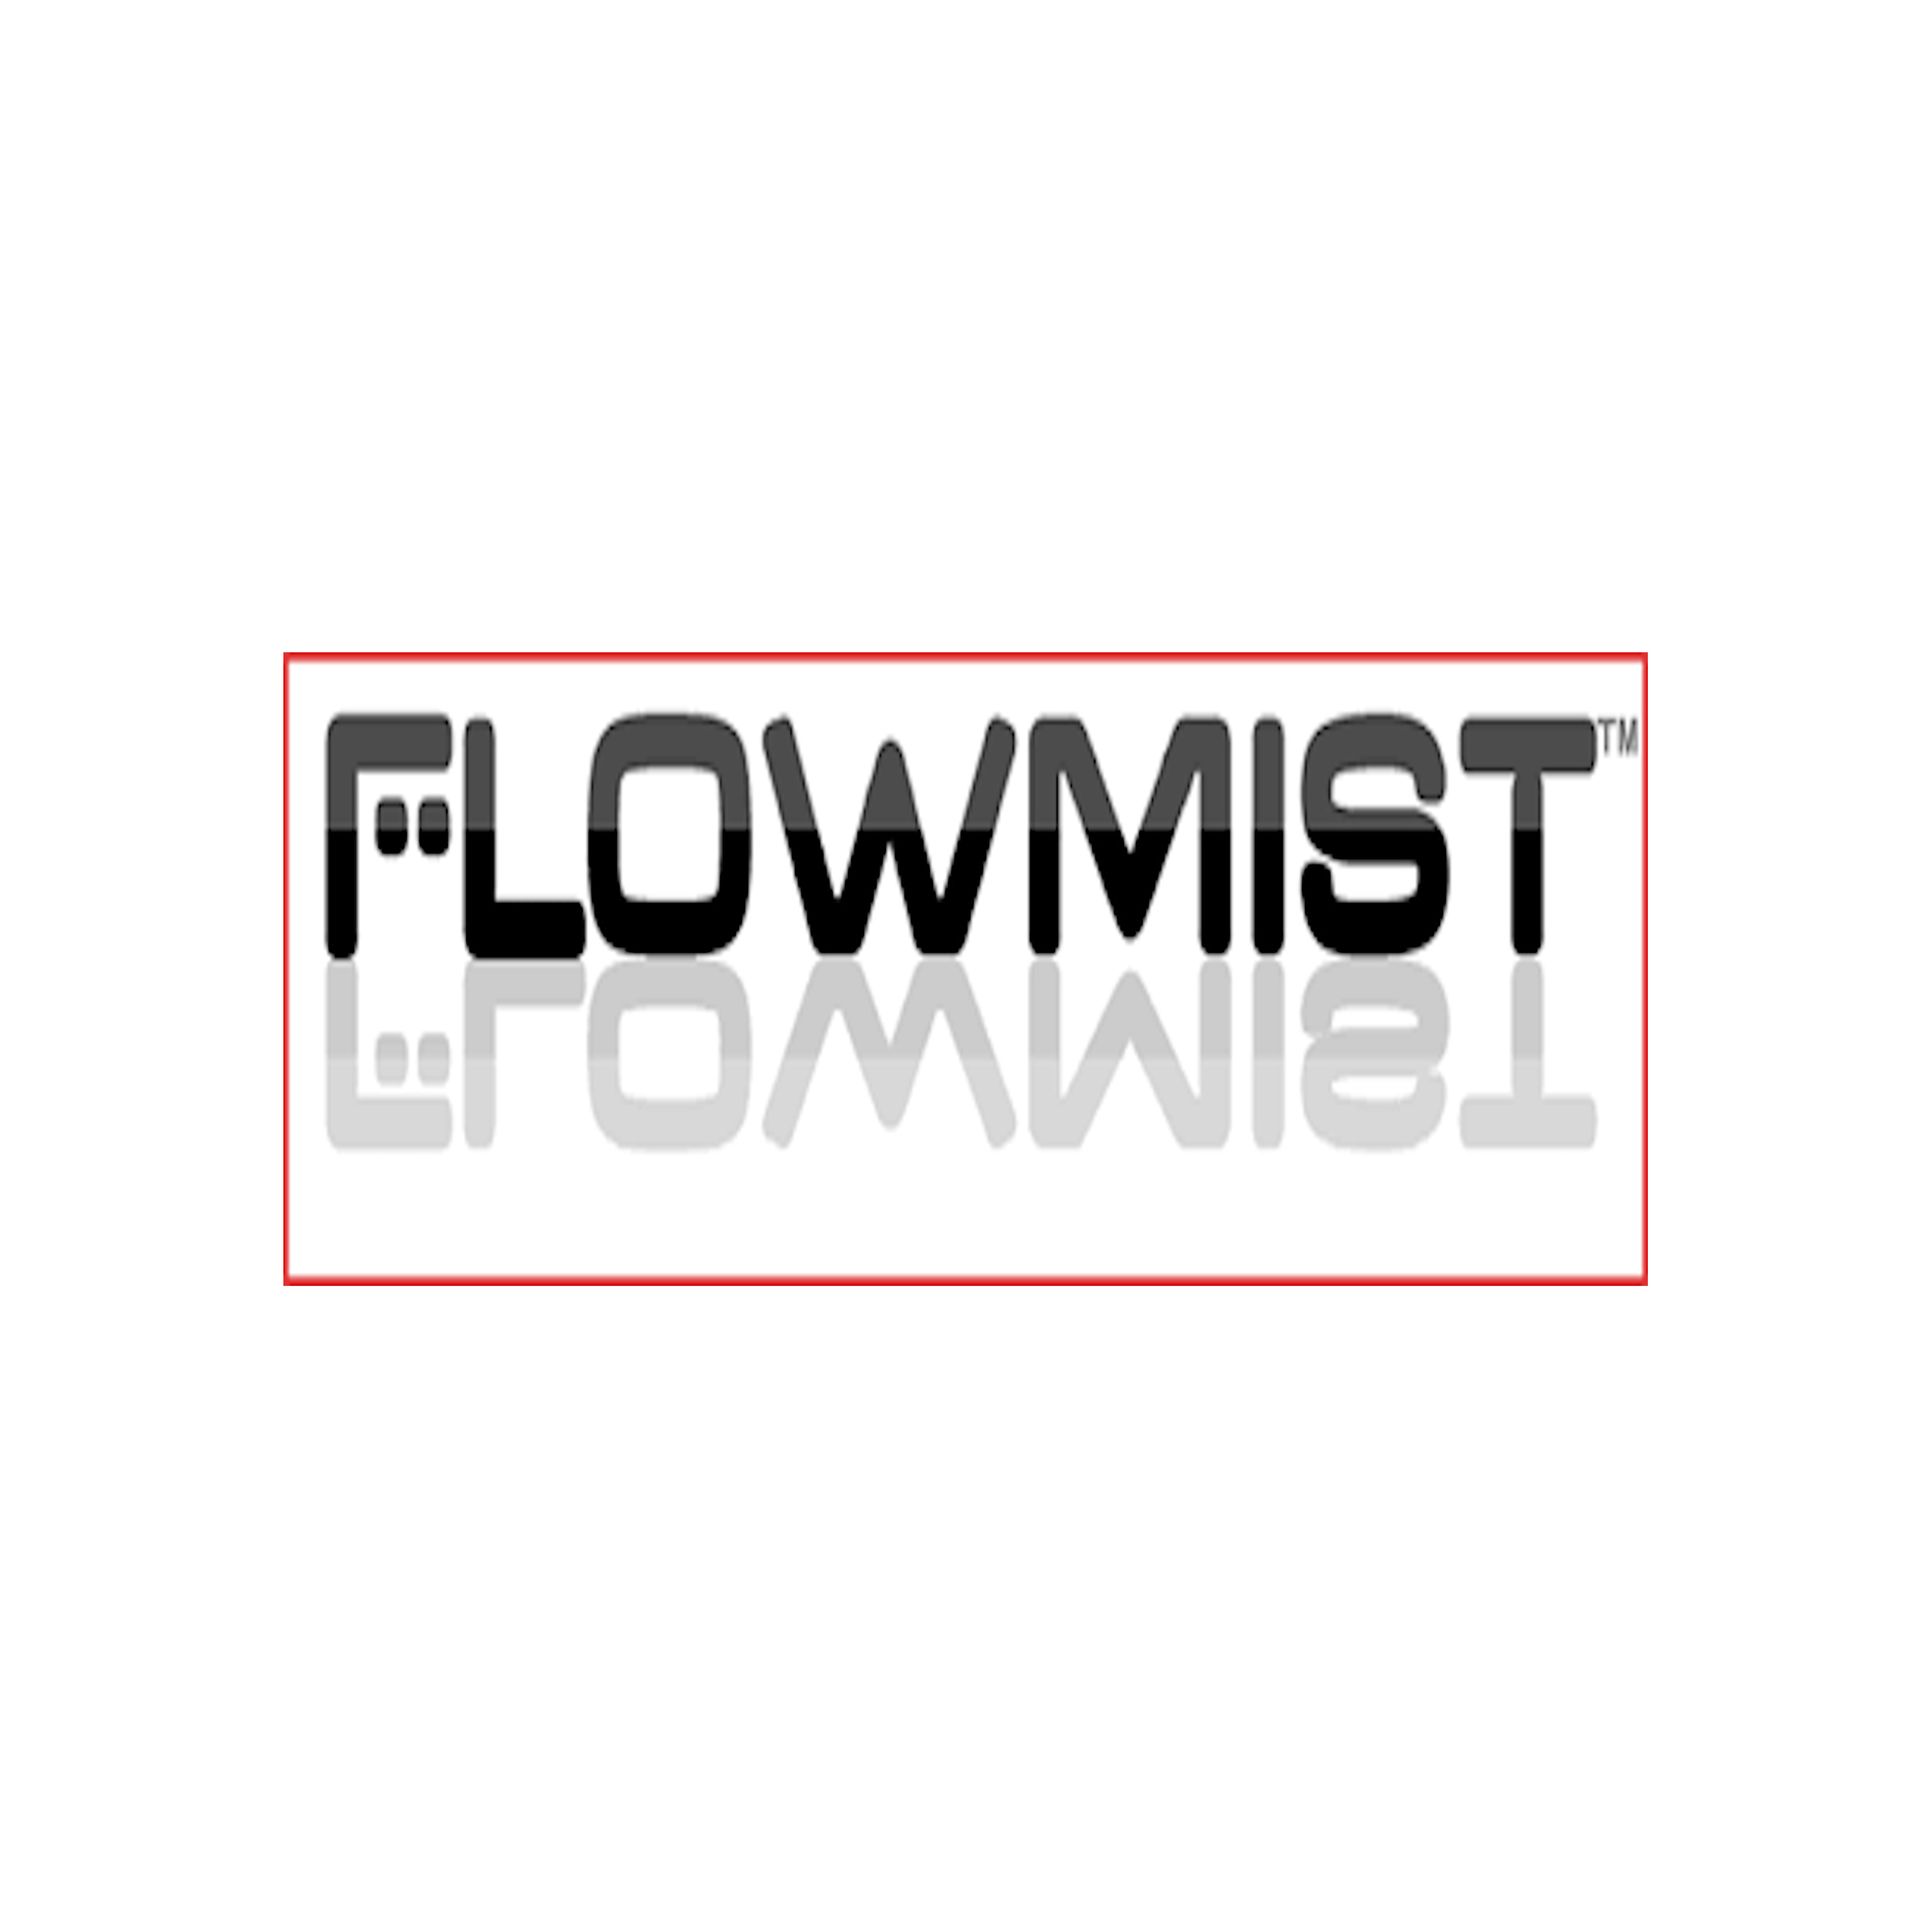 Flowmist